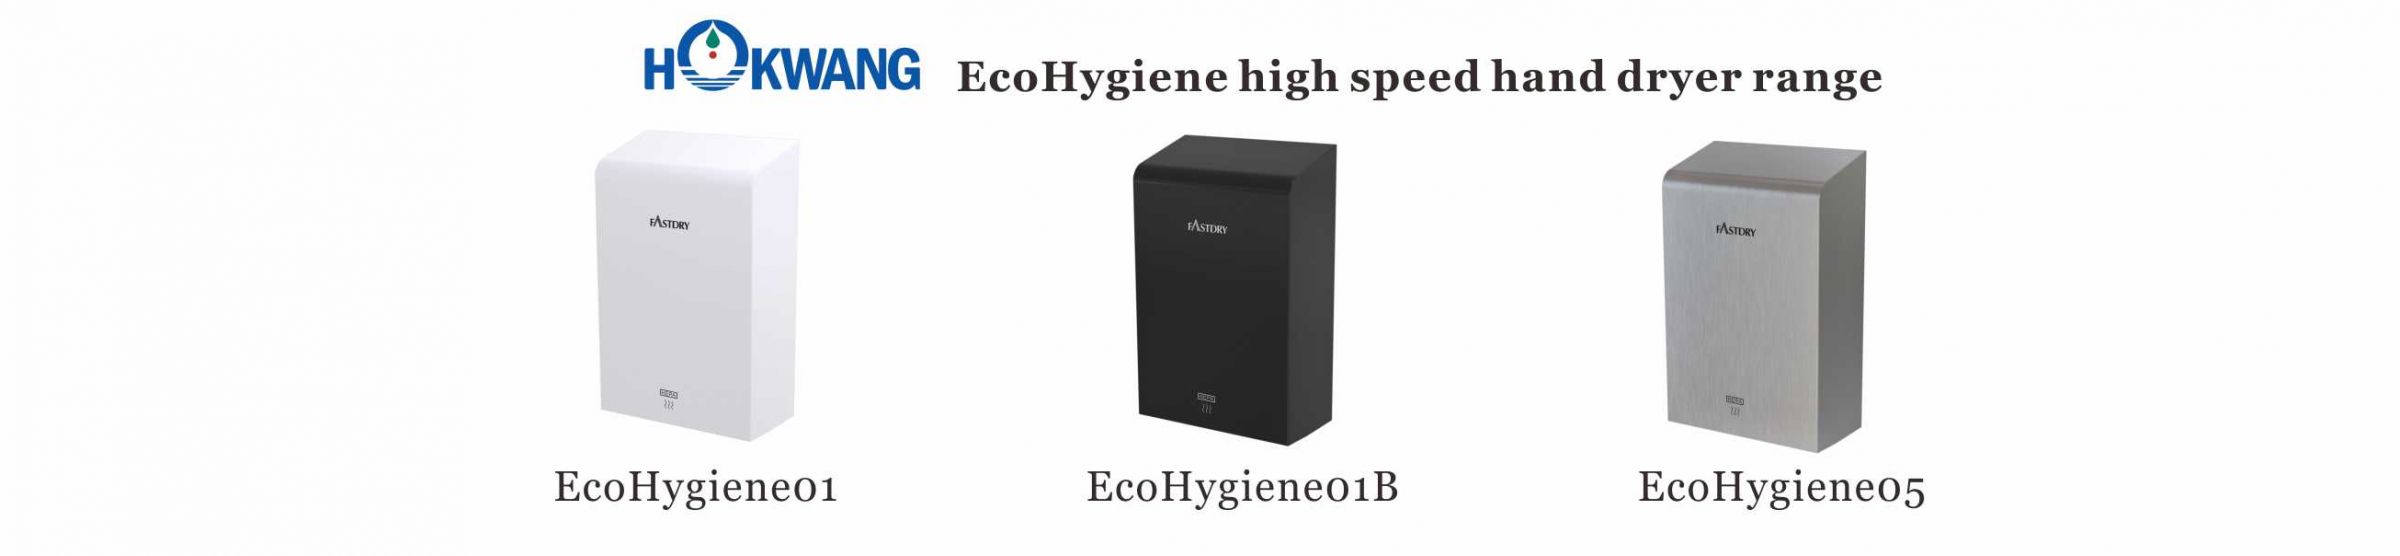 EcoHygiene High Speed Hand Dryer